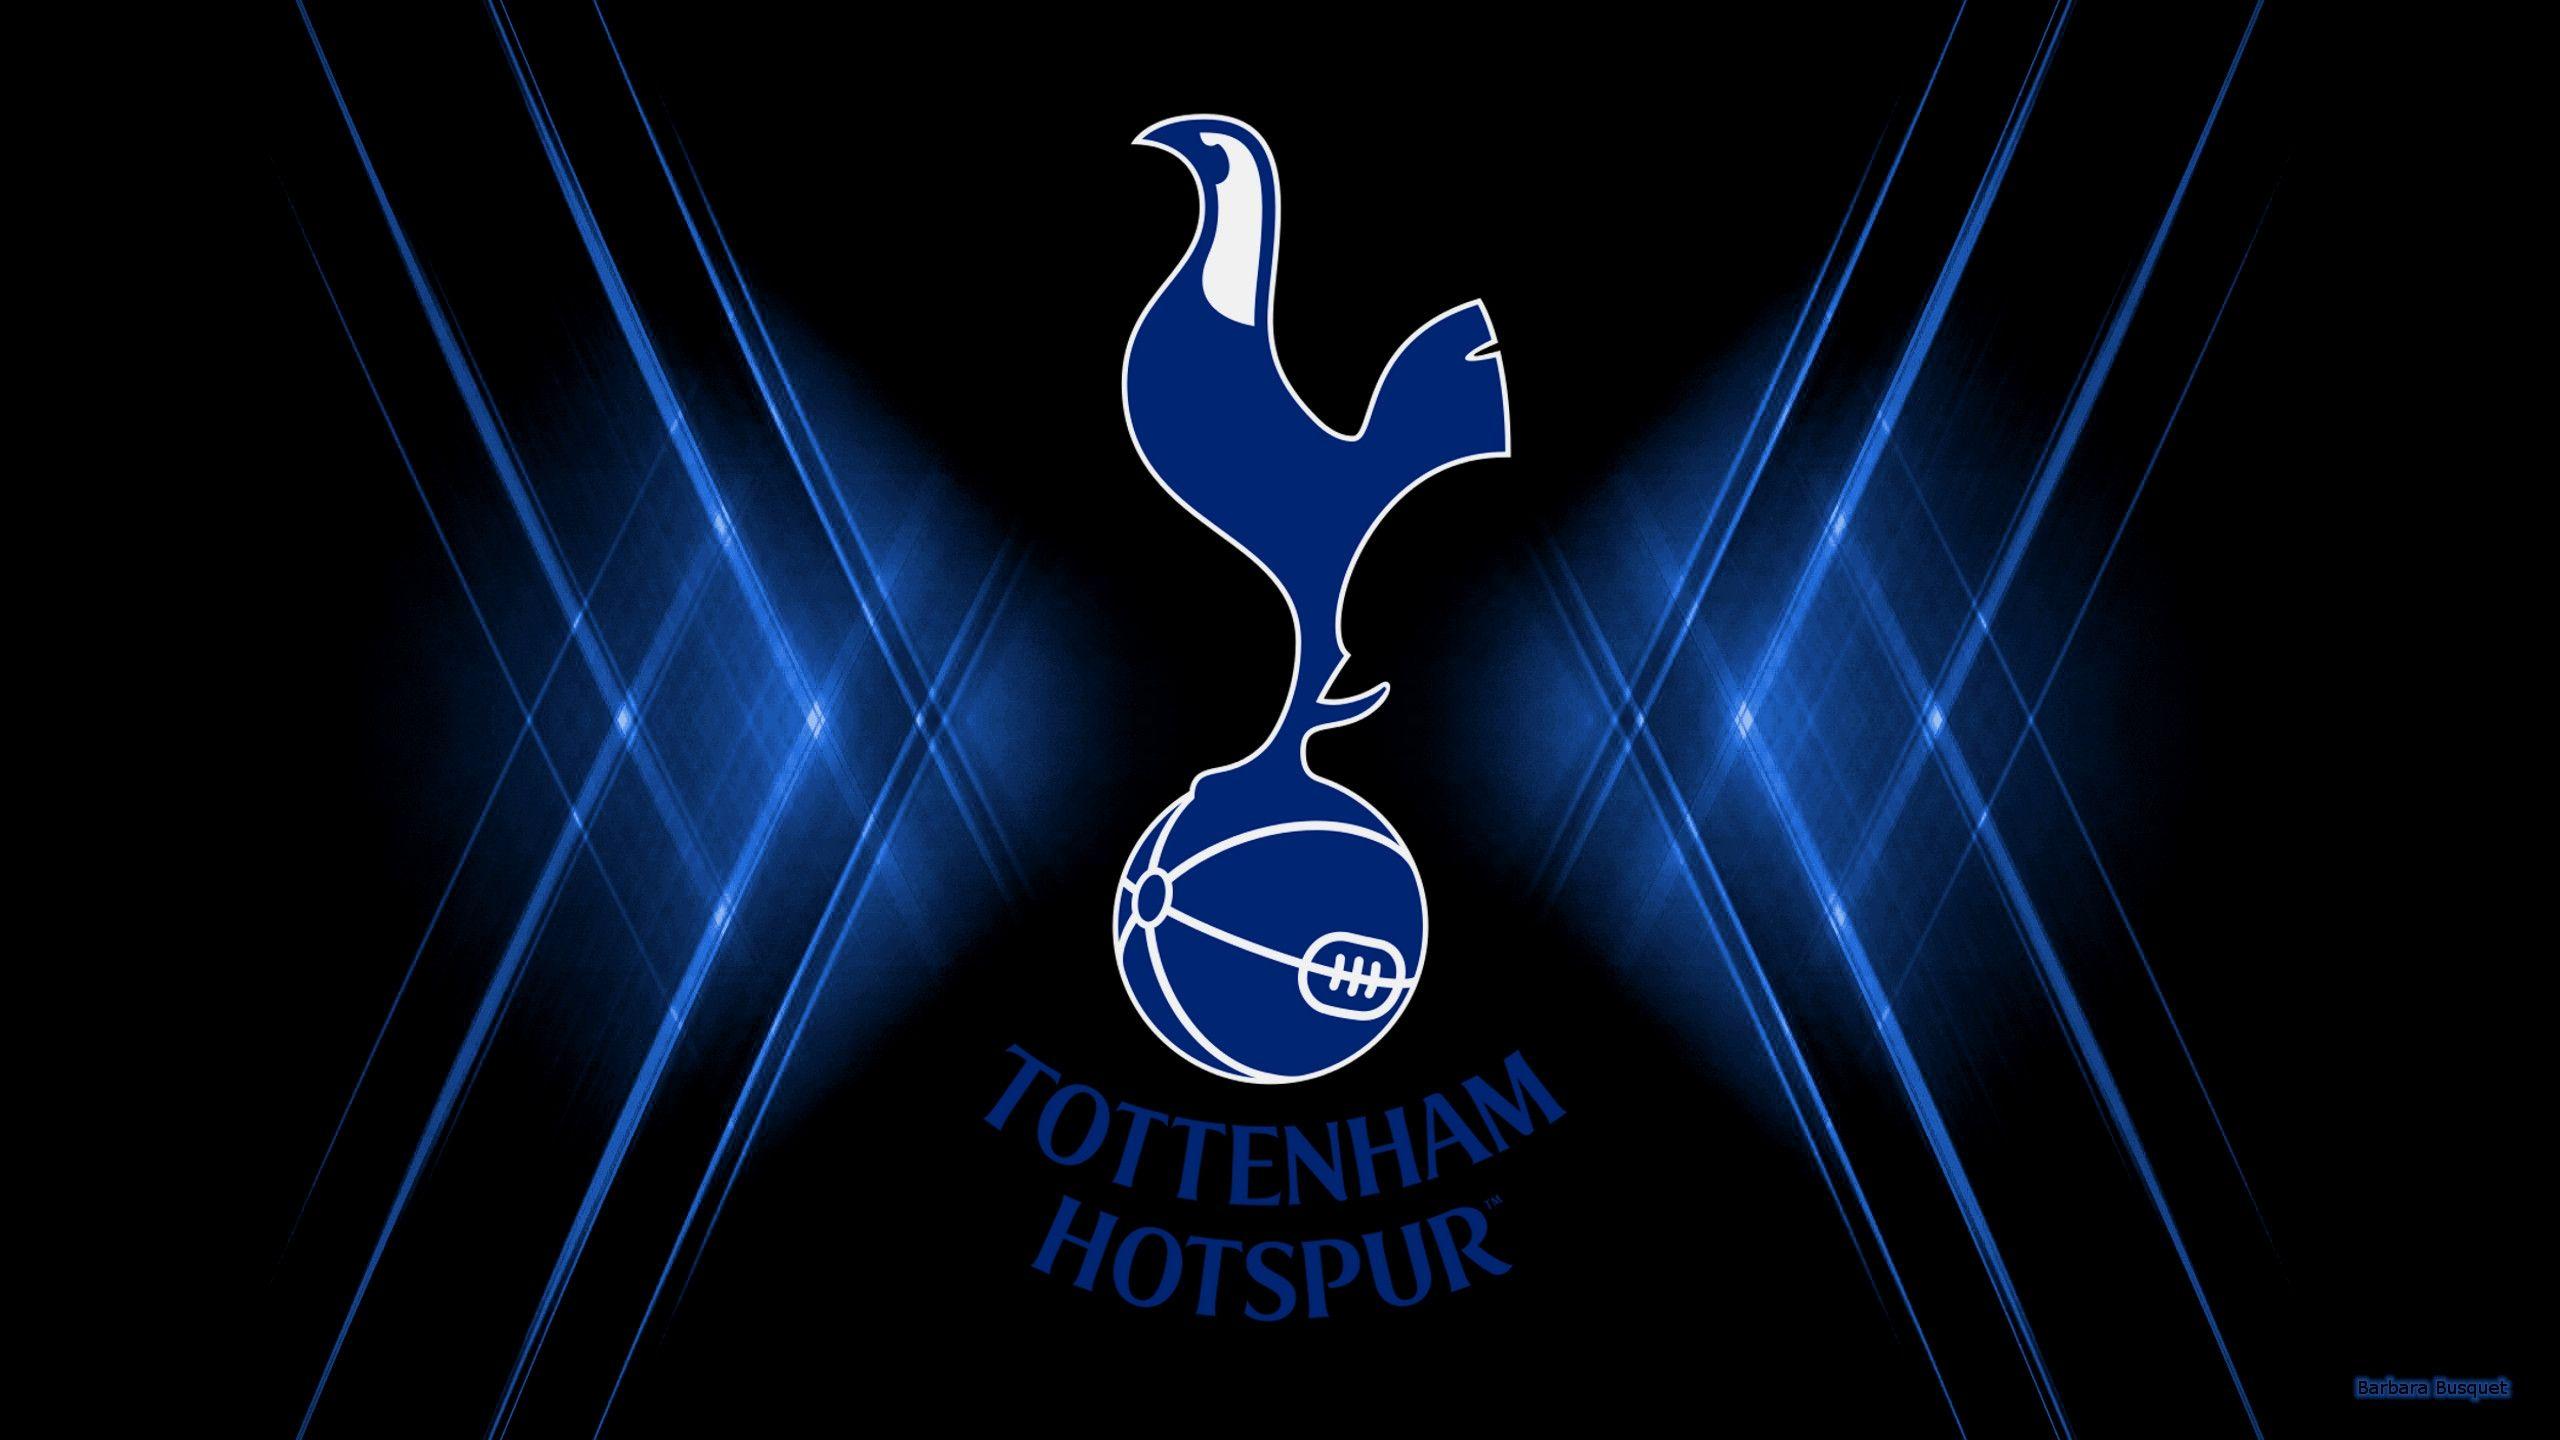 Tottenham Hotspur Logo - Lovely tottenham Hotspur Logo Wallpaper. Great Foofball Club